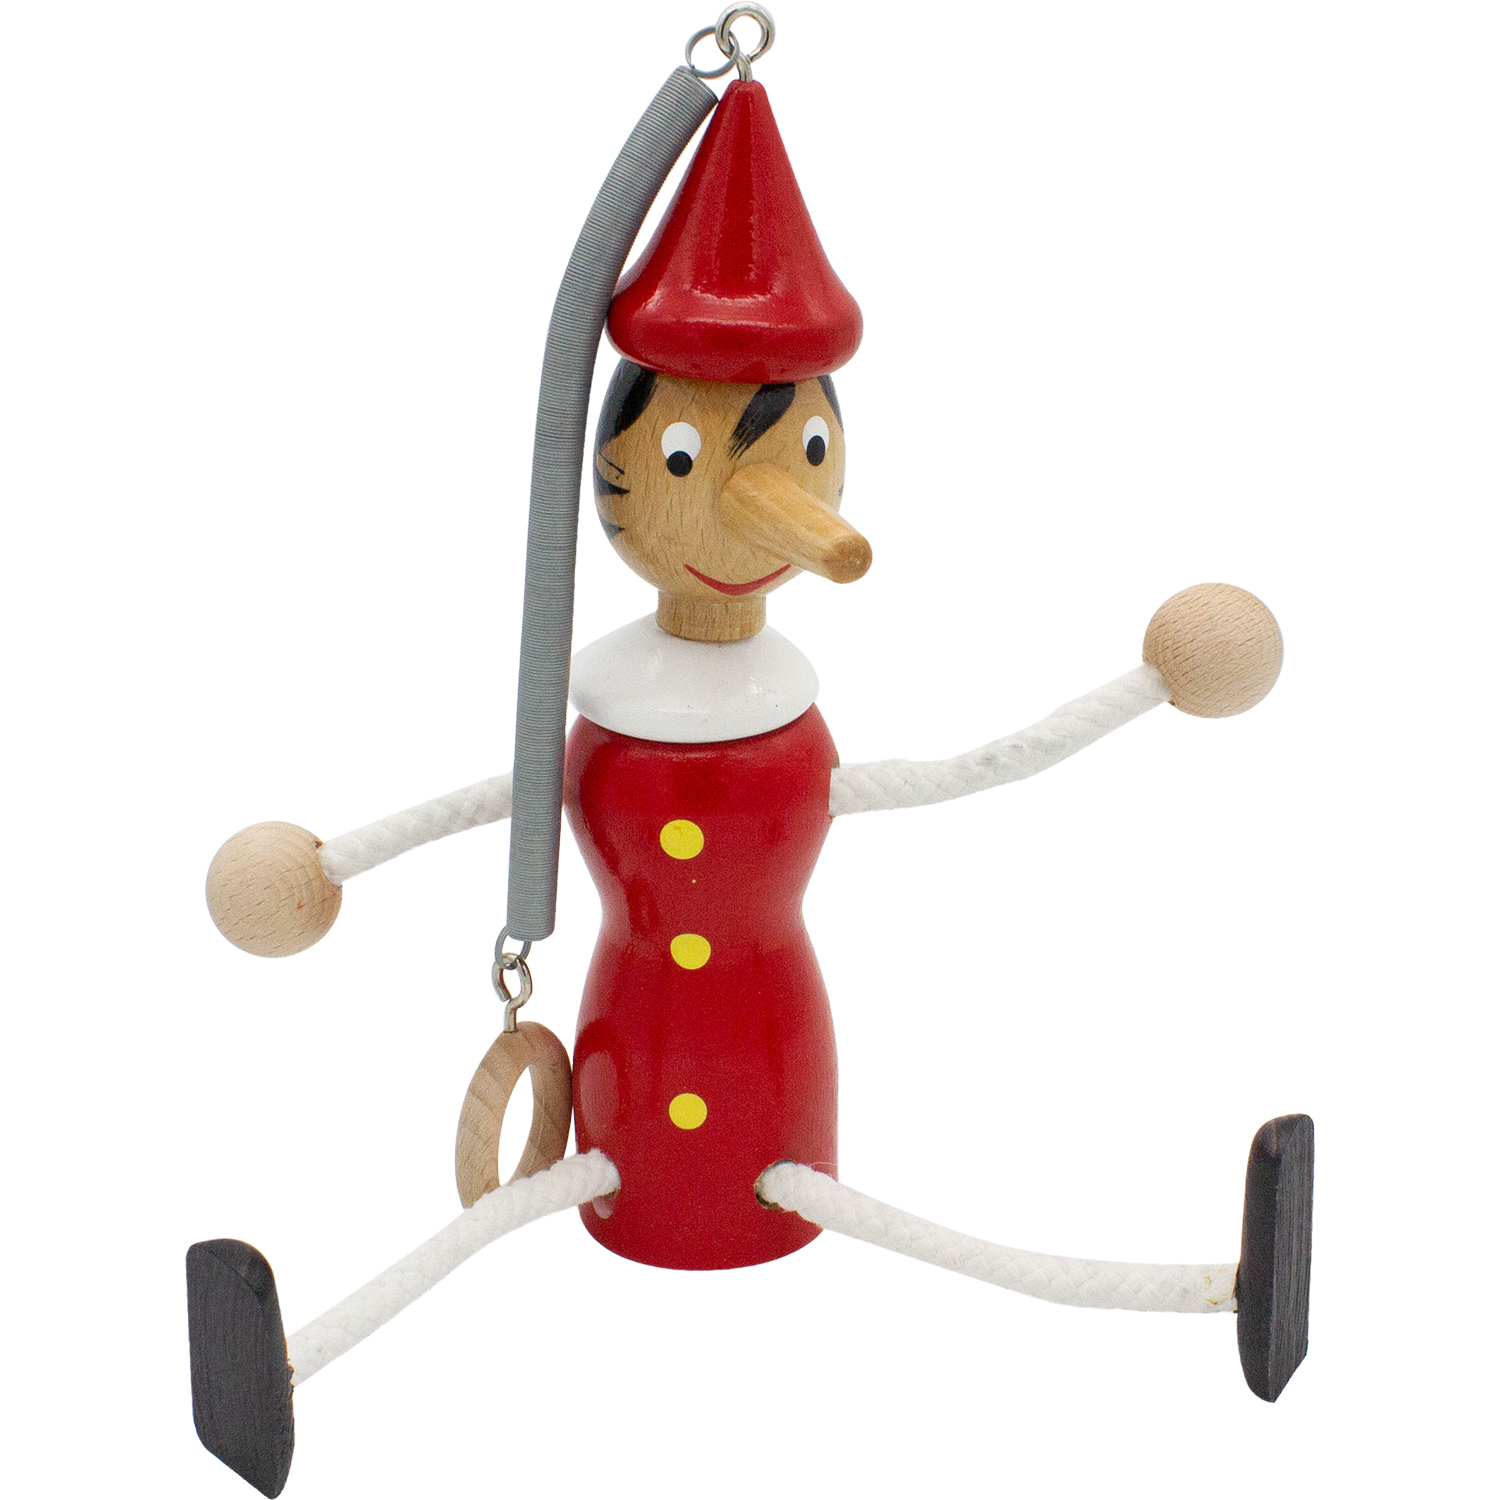 Pinocchio Schwingfigur aus Holz mit Feder, Länge 20 cm + 18 cm Feder- made in Italy- 9007